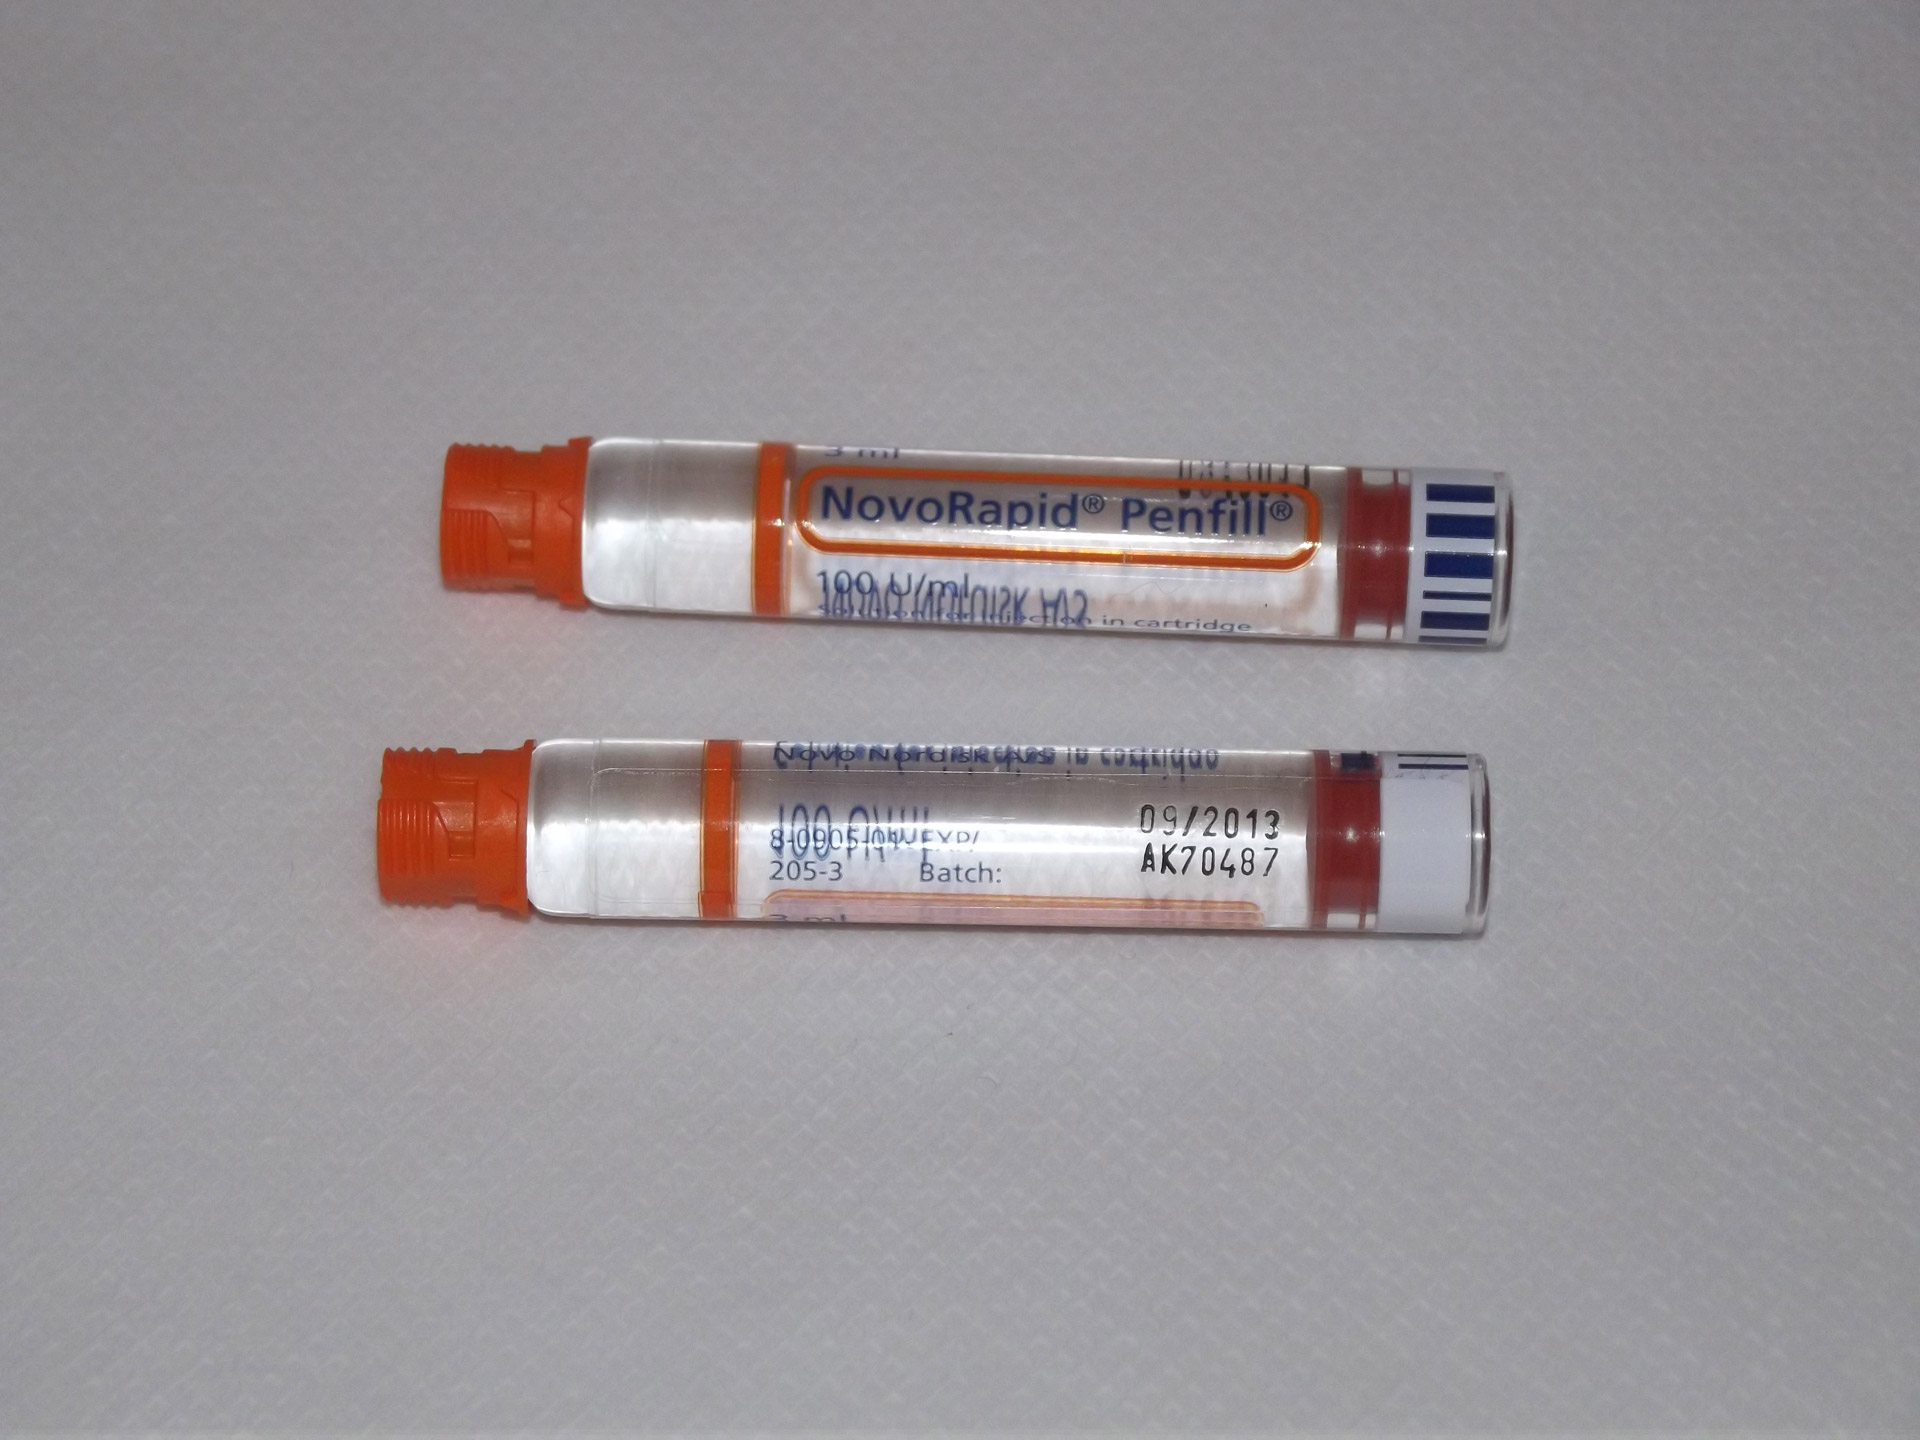 novorapid-insulin-refill-free-stock-photo-public-domain-pictures